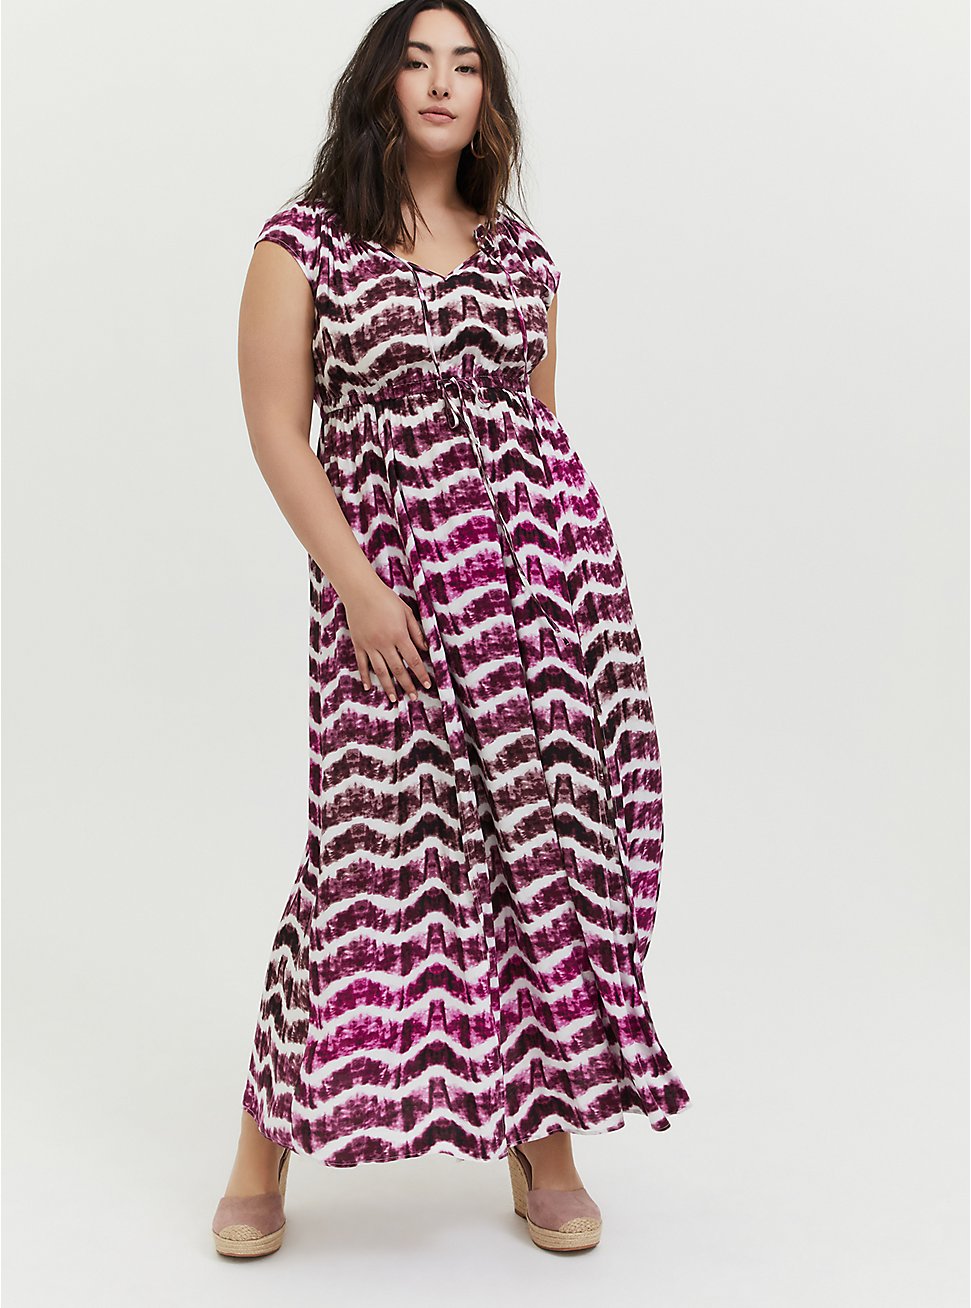 Plus Size - Berry Purple Tie-Dye Challis Drawstring Maxi Dress - Torrid